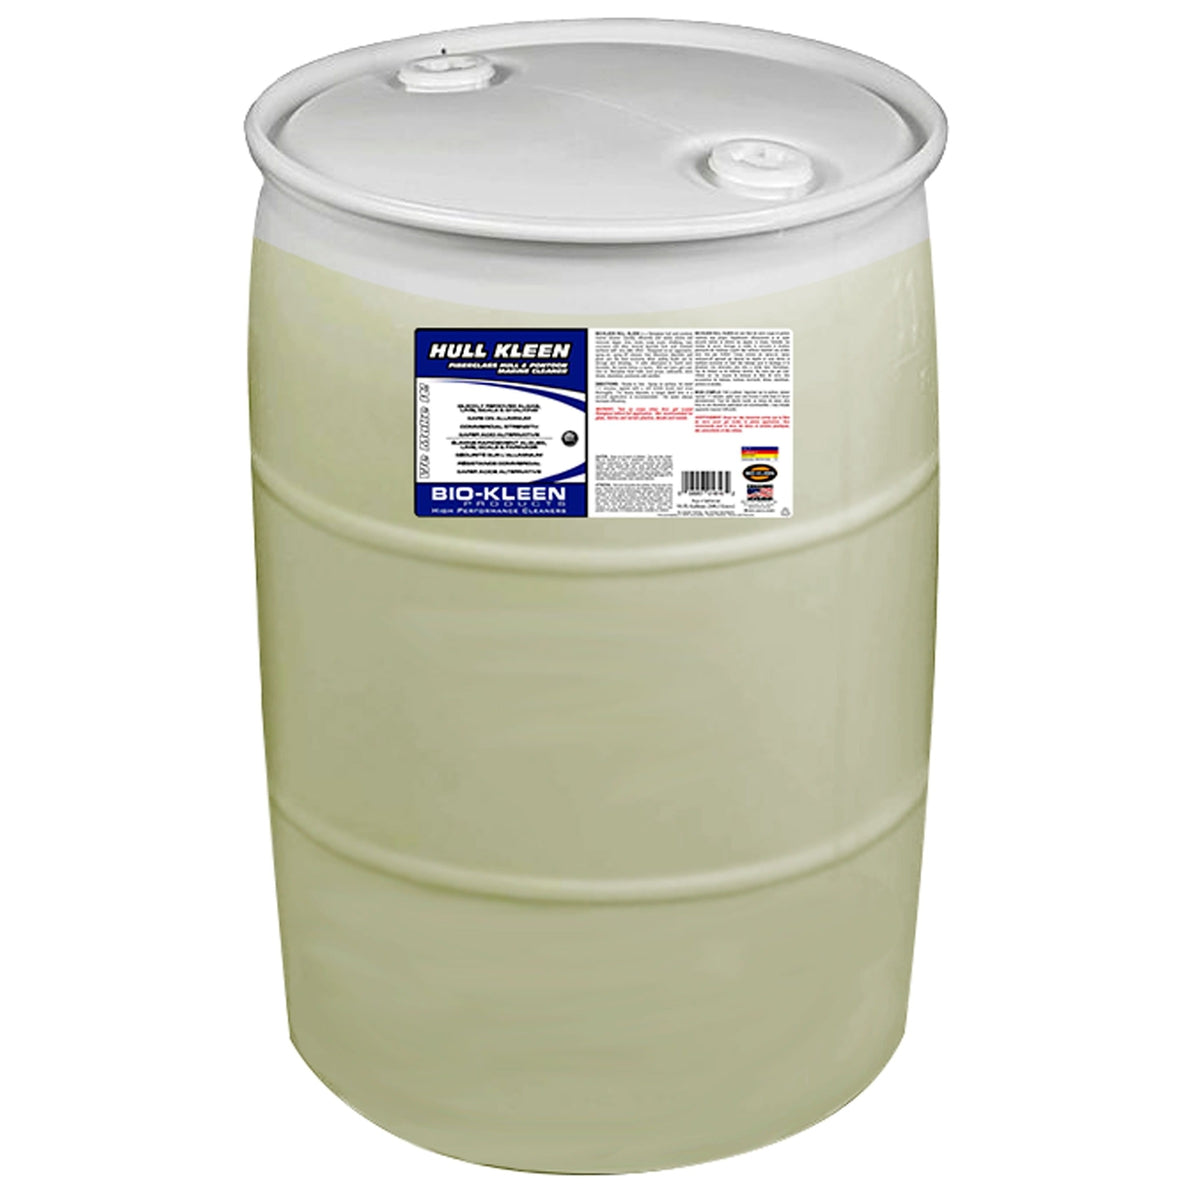 Biokleen Hull Kleen Acid Hull Cleaner 55-Gallon #M01616